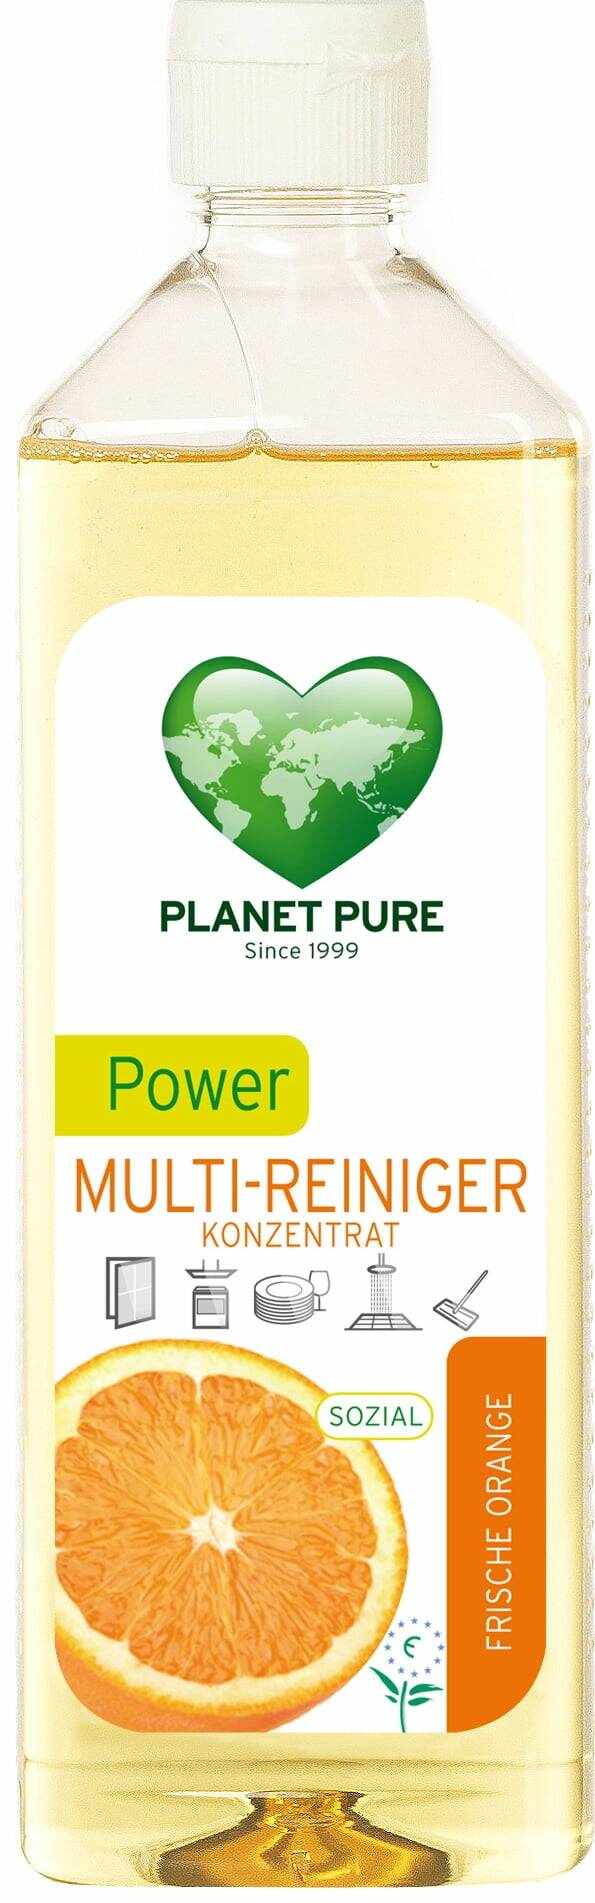 Detergent concentrat cu ulei de portocale - Power Cleaner, eco-bio, 510ml Planet Pure